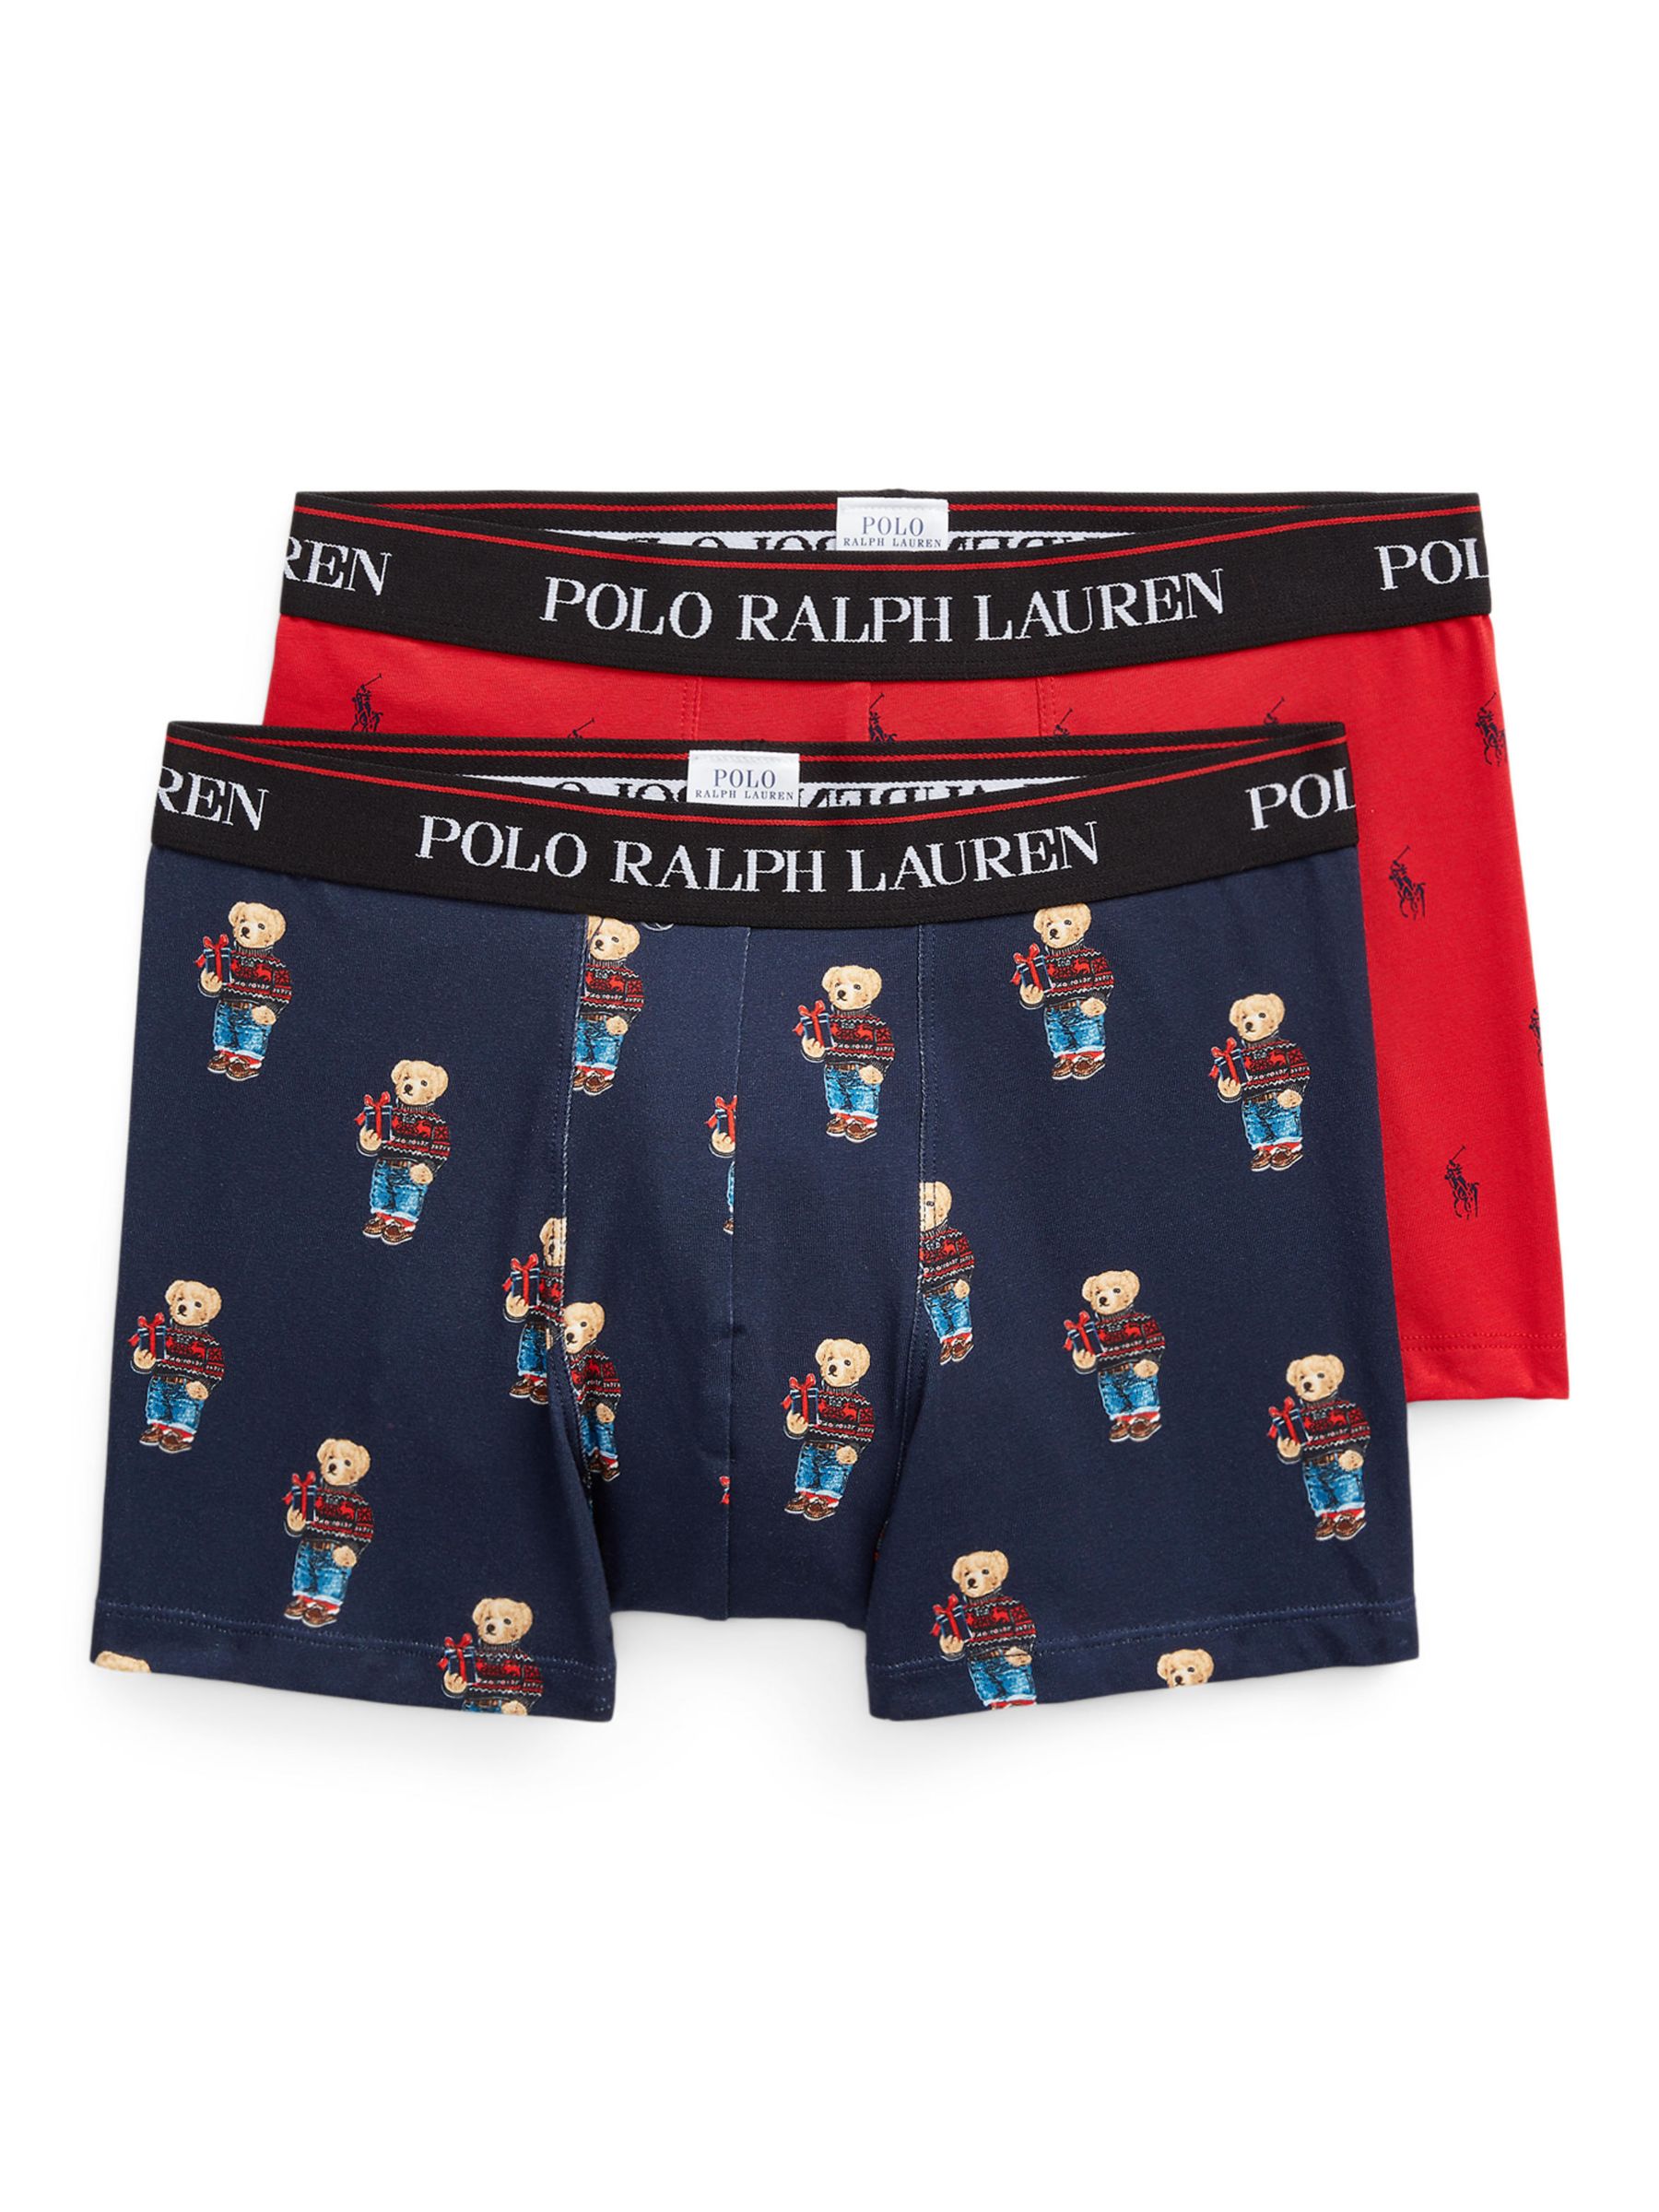 Polo Ralph Lauren Xmas Bear Trunks, Pack of 2, Multi £45.00